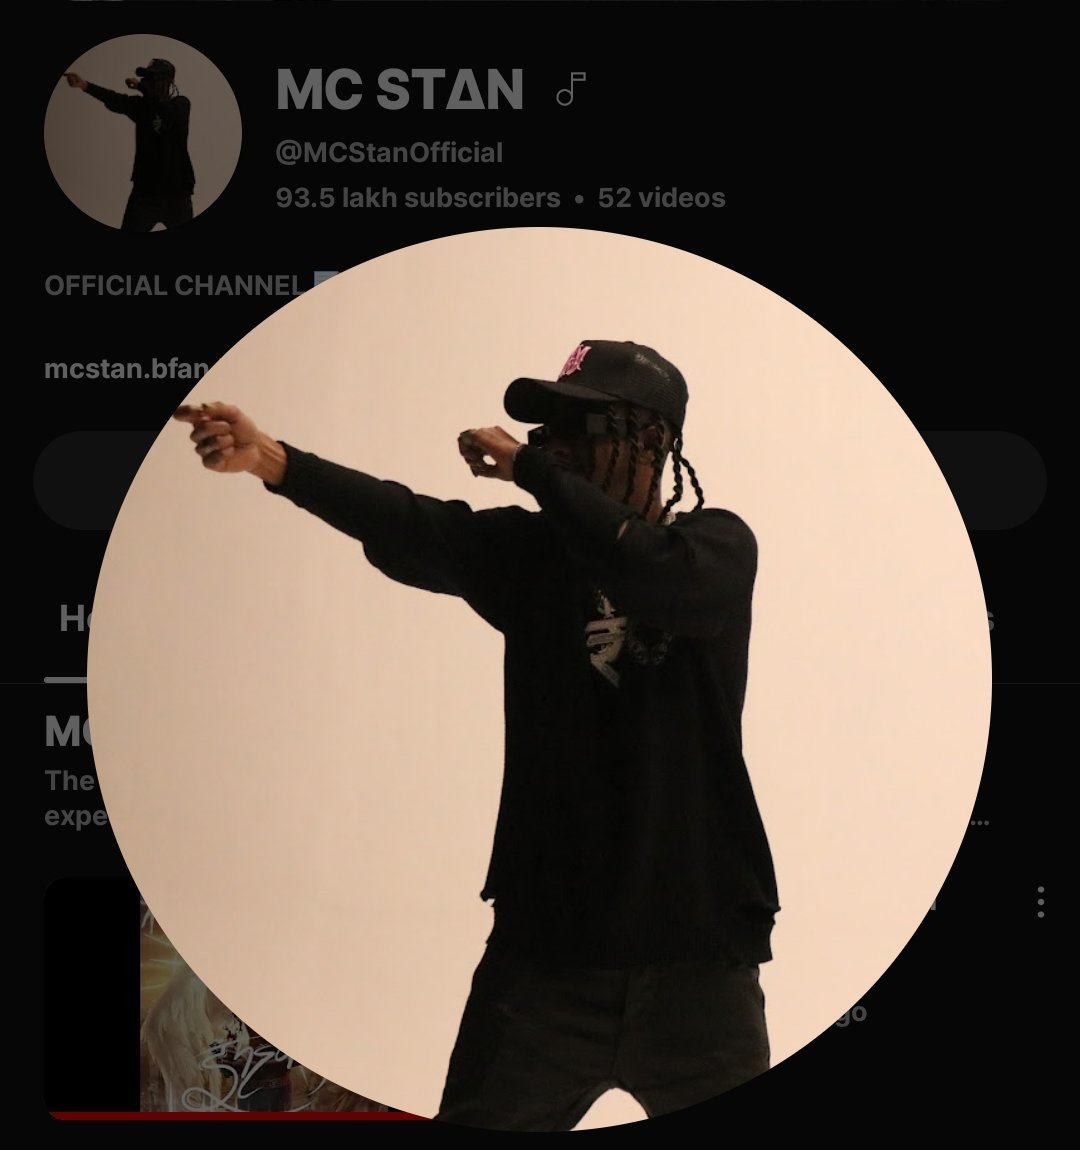 #MCStan  𝙲𝚑𝚊𝚗𝚐𝚎𝚍 𝚑𝚒𝚜 𝚢𝚘𝚞𝚝𝚞𝚋𝚎 𝙿𝚏𝚙 & 𝚋𝚊𝚗𝚗𝚎𝚛 ‼️ 
                           𝙺𝚞𝚌𝚑 𝚝𝚘 𝚗𝚎𝚠 𝚊𝚊𝚛𝚊𝚑𝚊 𝚑𝚊𝚒 💿📈

|| #MCStanArmy #MitraMandal #OTW #SingleTrack #hiphopmusic #Dhh ||